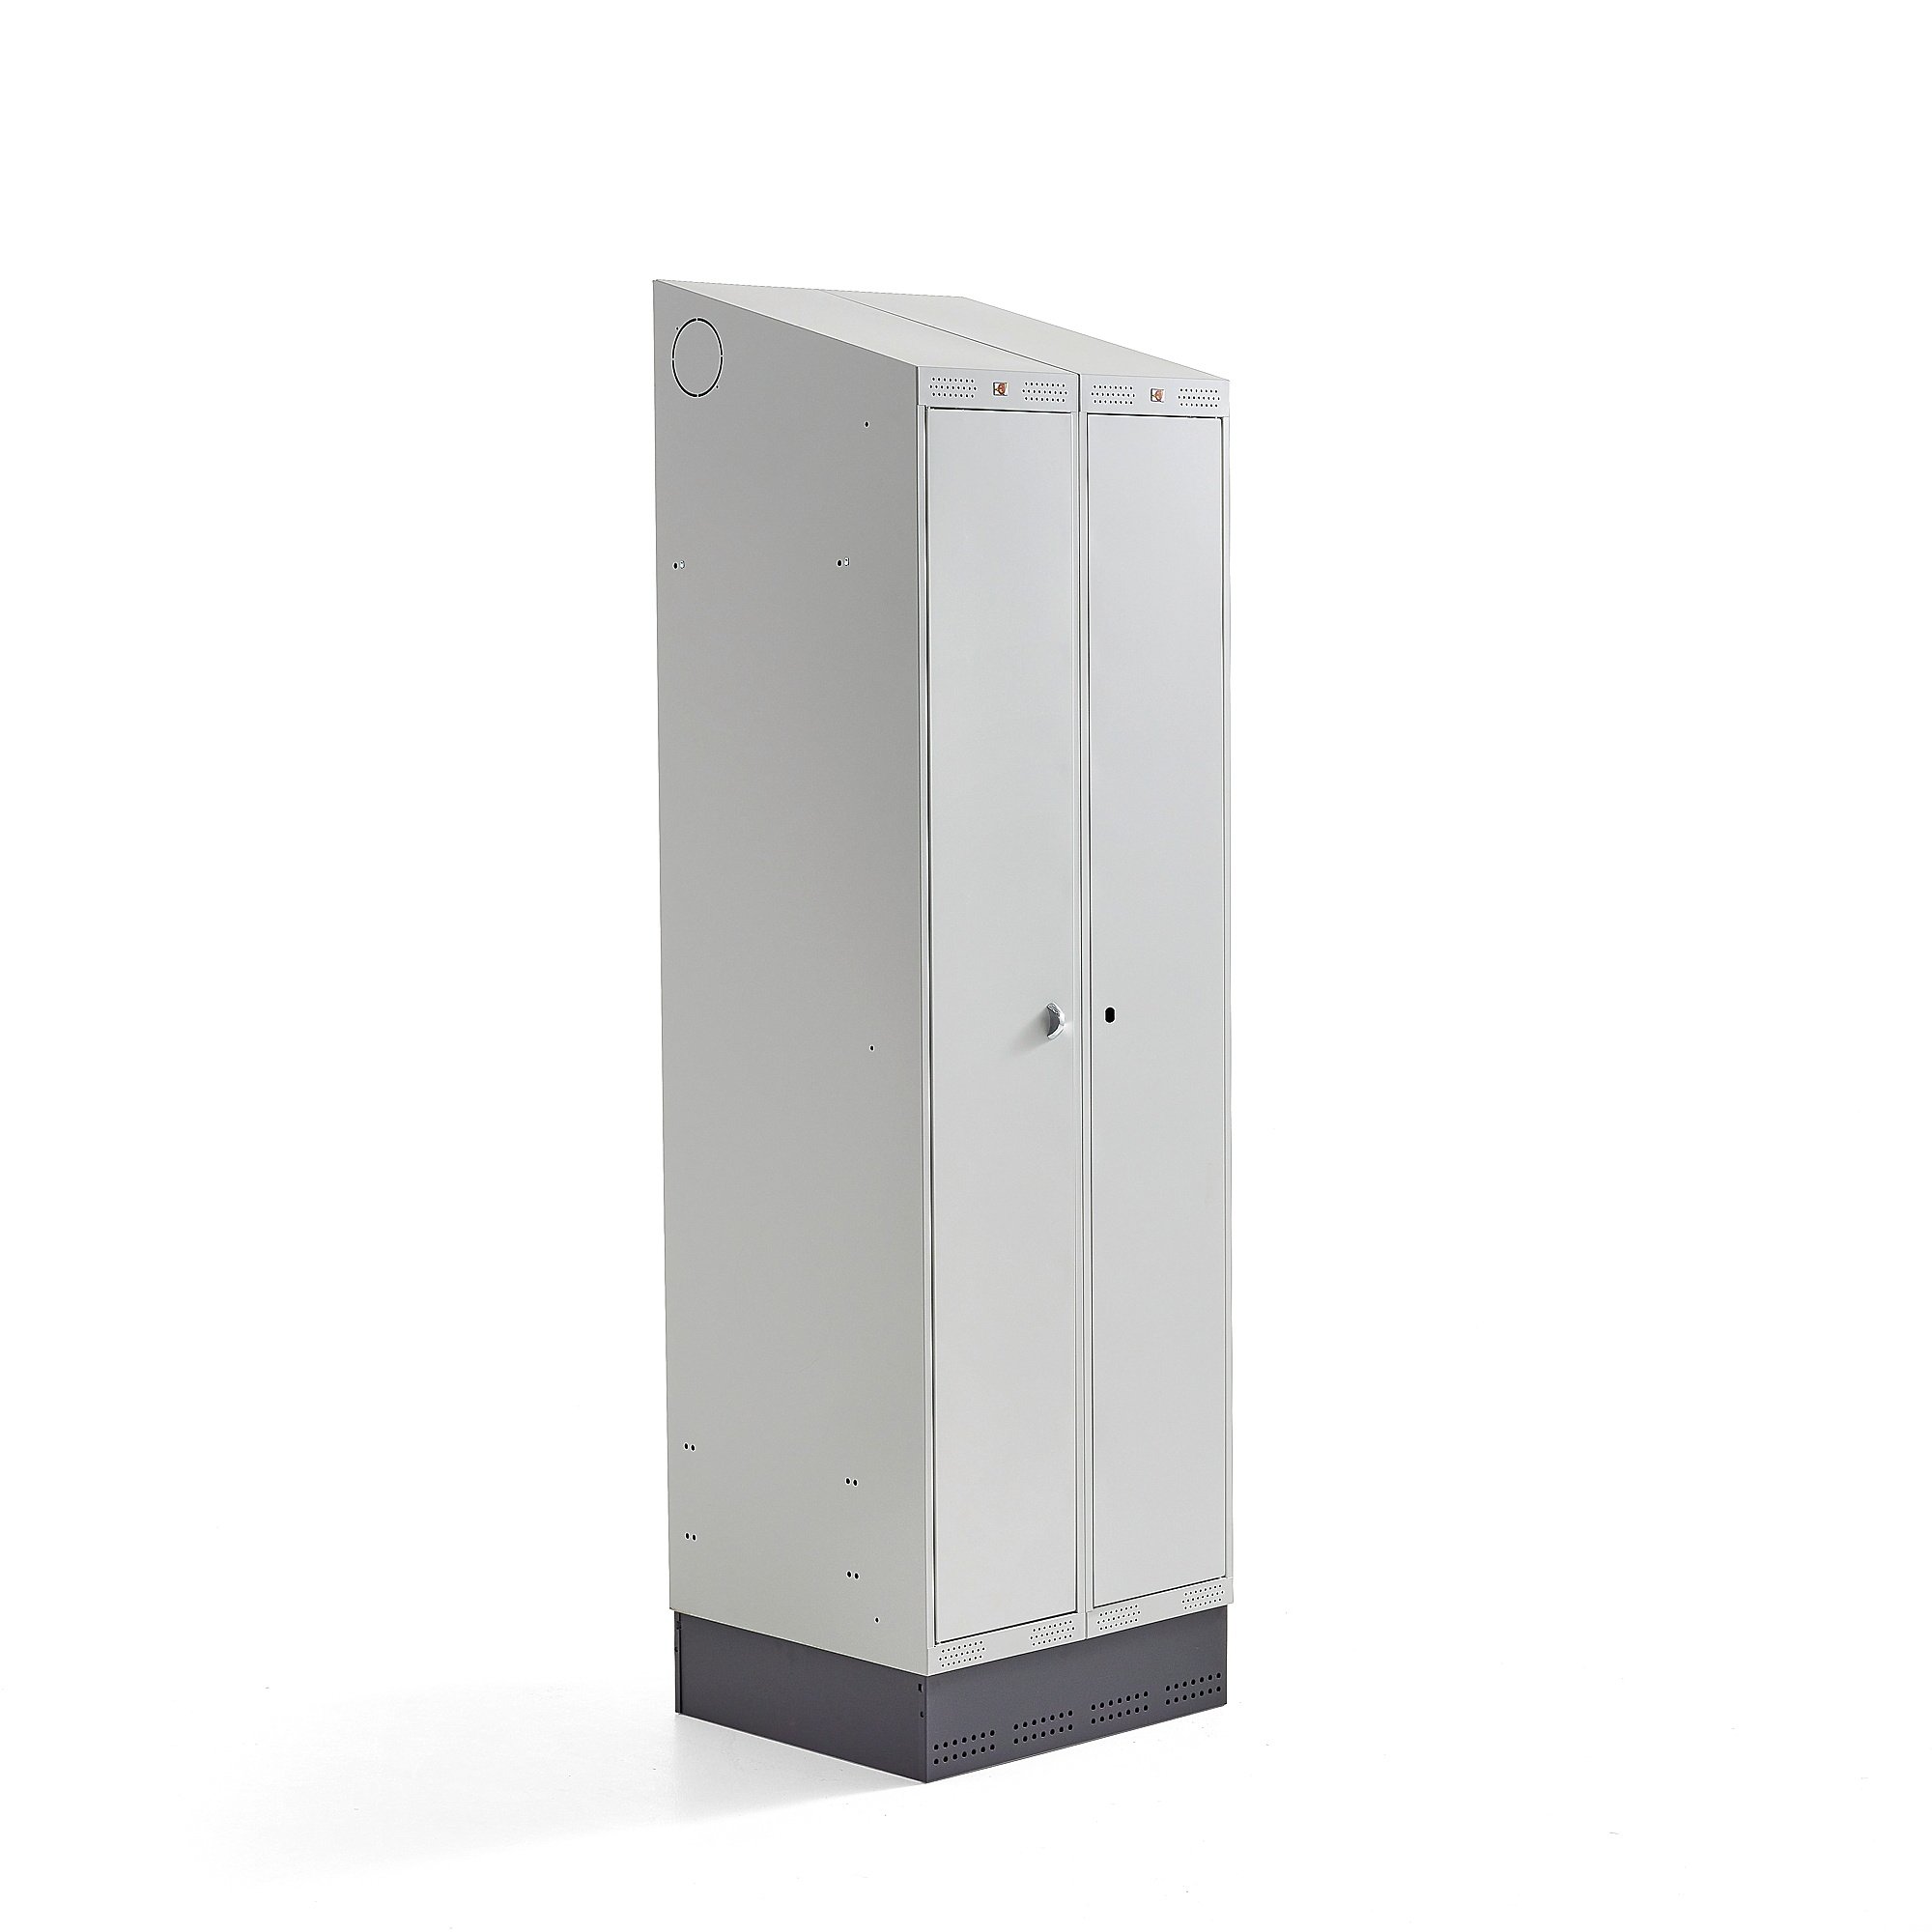 Šatní skříňka CLASSIC COMBO, 1 sekce, 2 boxy, 2050x600x550 mm, sokl, šedé dveře